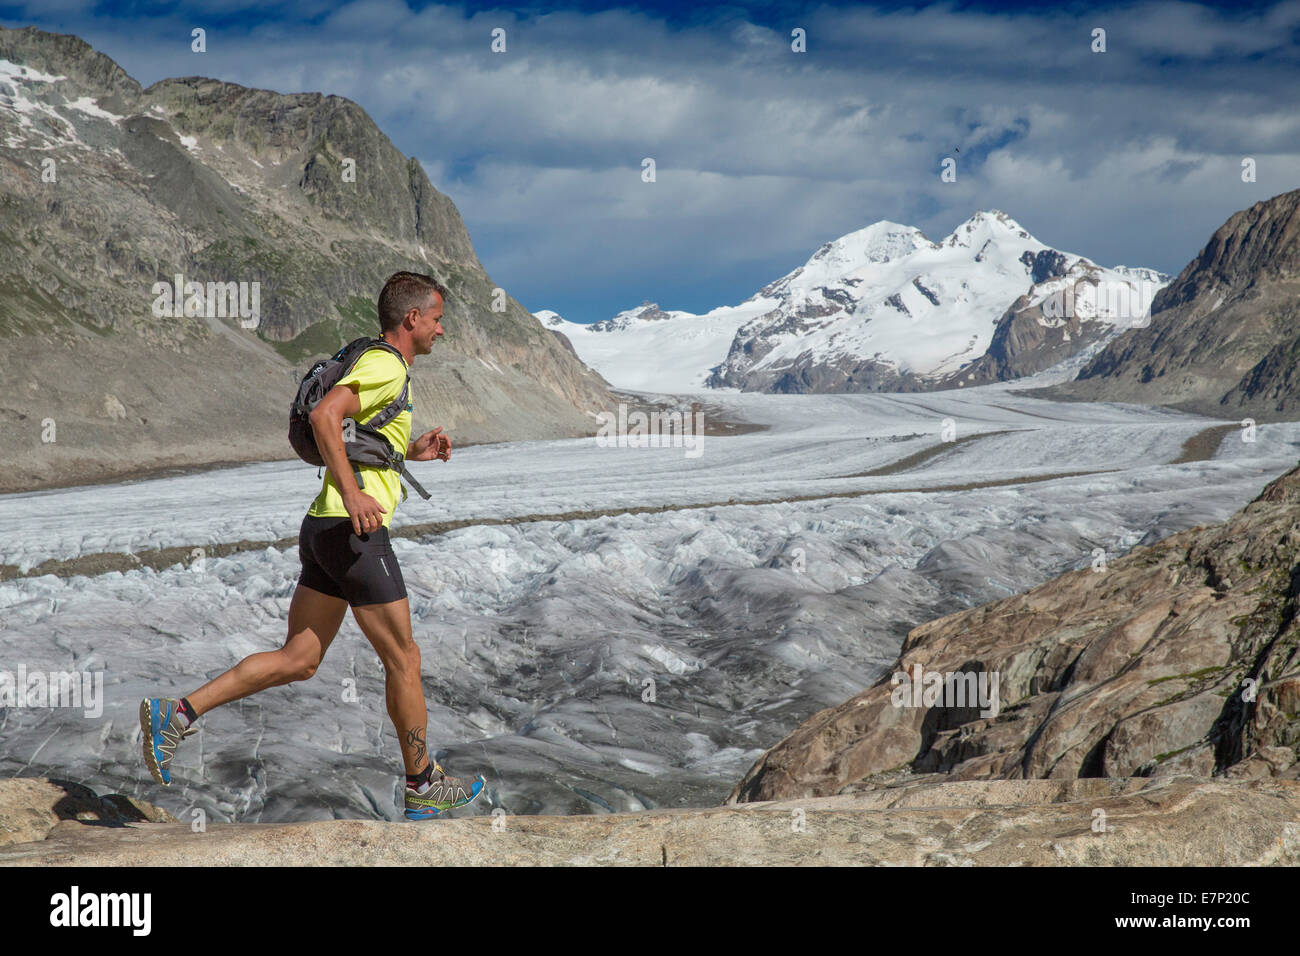 Märijelensee, runner, Aletsch glacier, mountain, mountains, canton, VS, Valais, glacier, ice, moraine, run running, Switzerland, Stock Photo